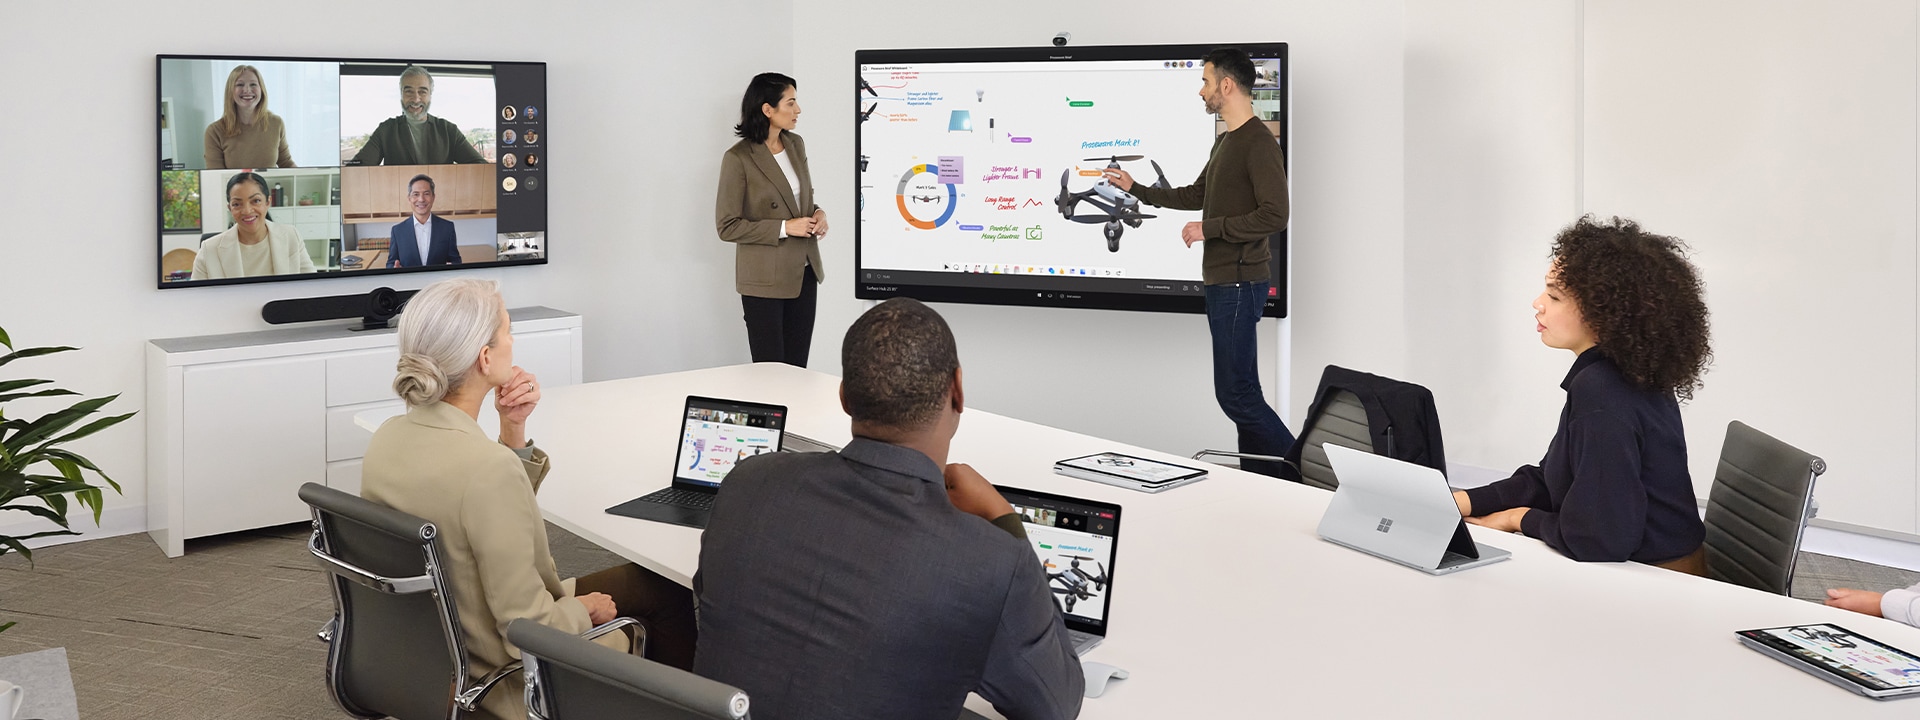 เพื่อนร่วมงานสองคนทำงานร่วมกันโดยใช้ Surface Hub 2S พร้อมกับนำการประชุมเสมือนจริงผ่าน Teams ด้วย Surface Laptop บนโต๊ะที่อยู่ใกล้ ๆ